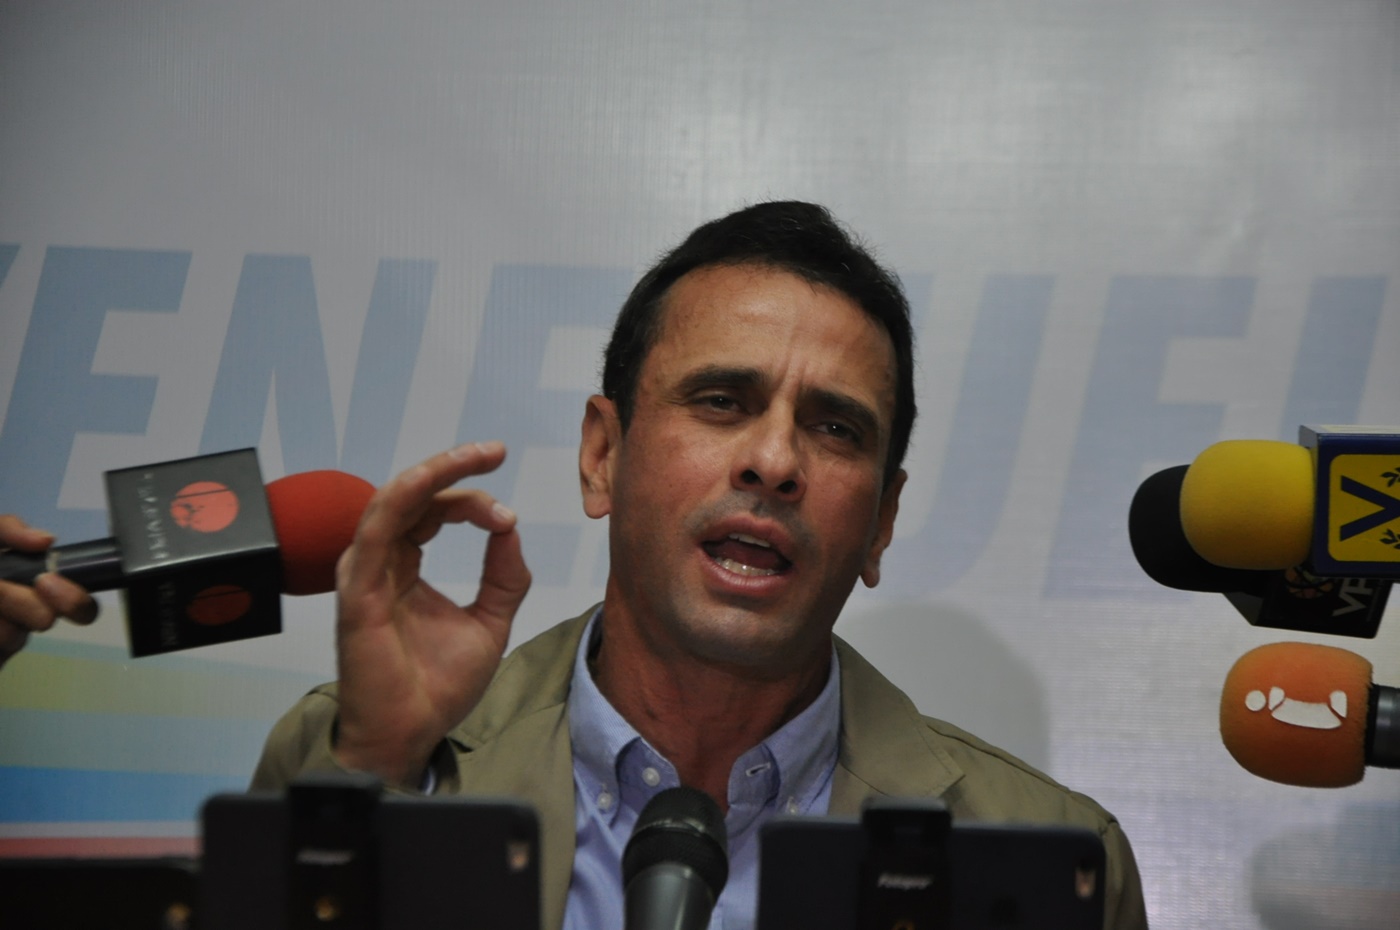 Anulan pasaporte de Capriles y le impiden viajar para reunión en la ONU (Video)